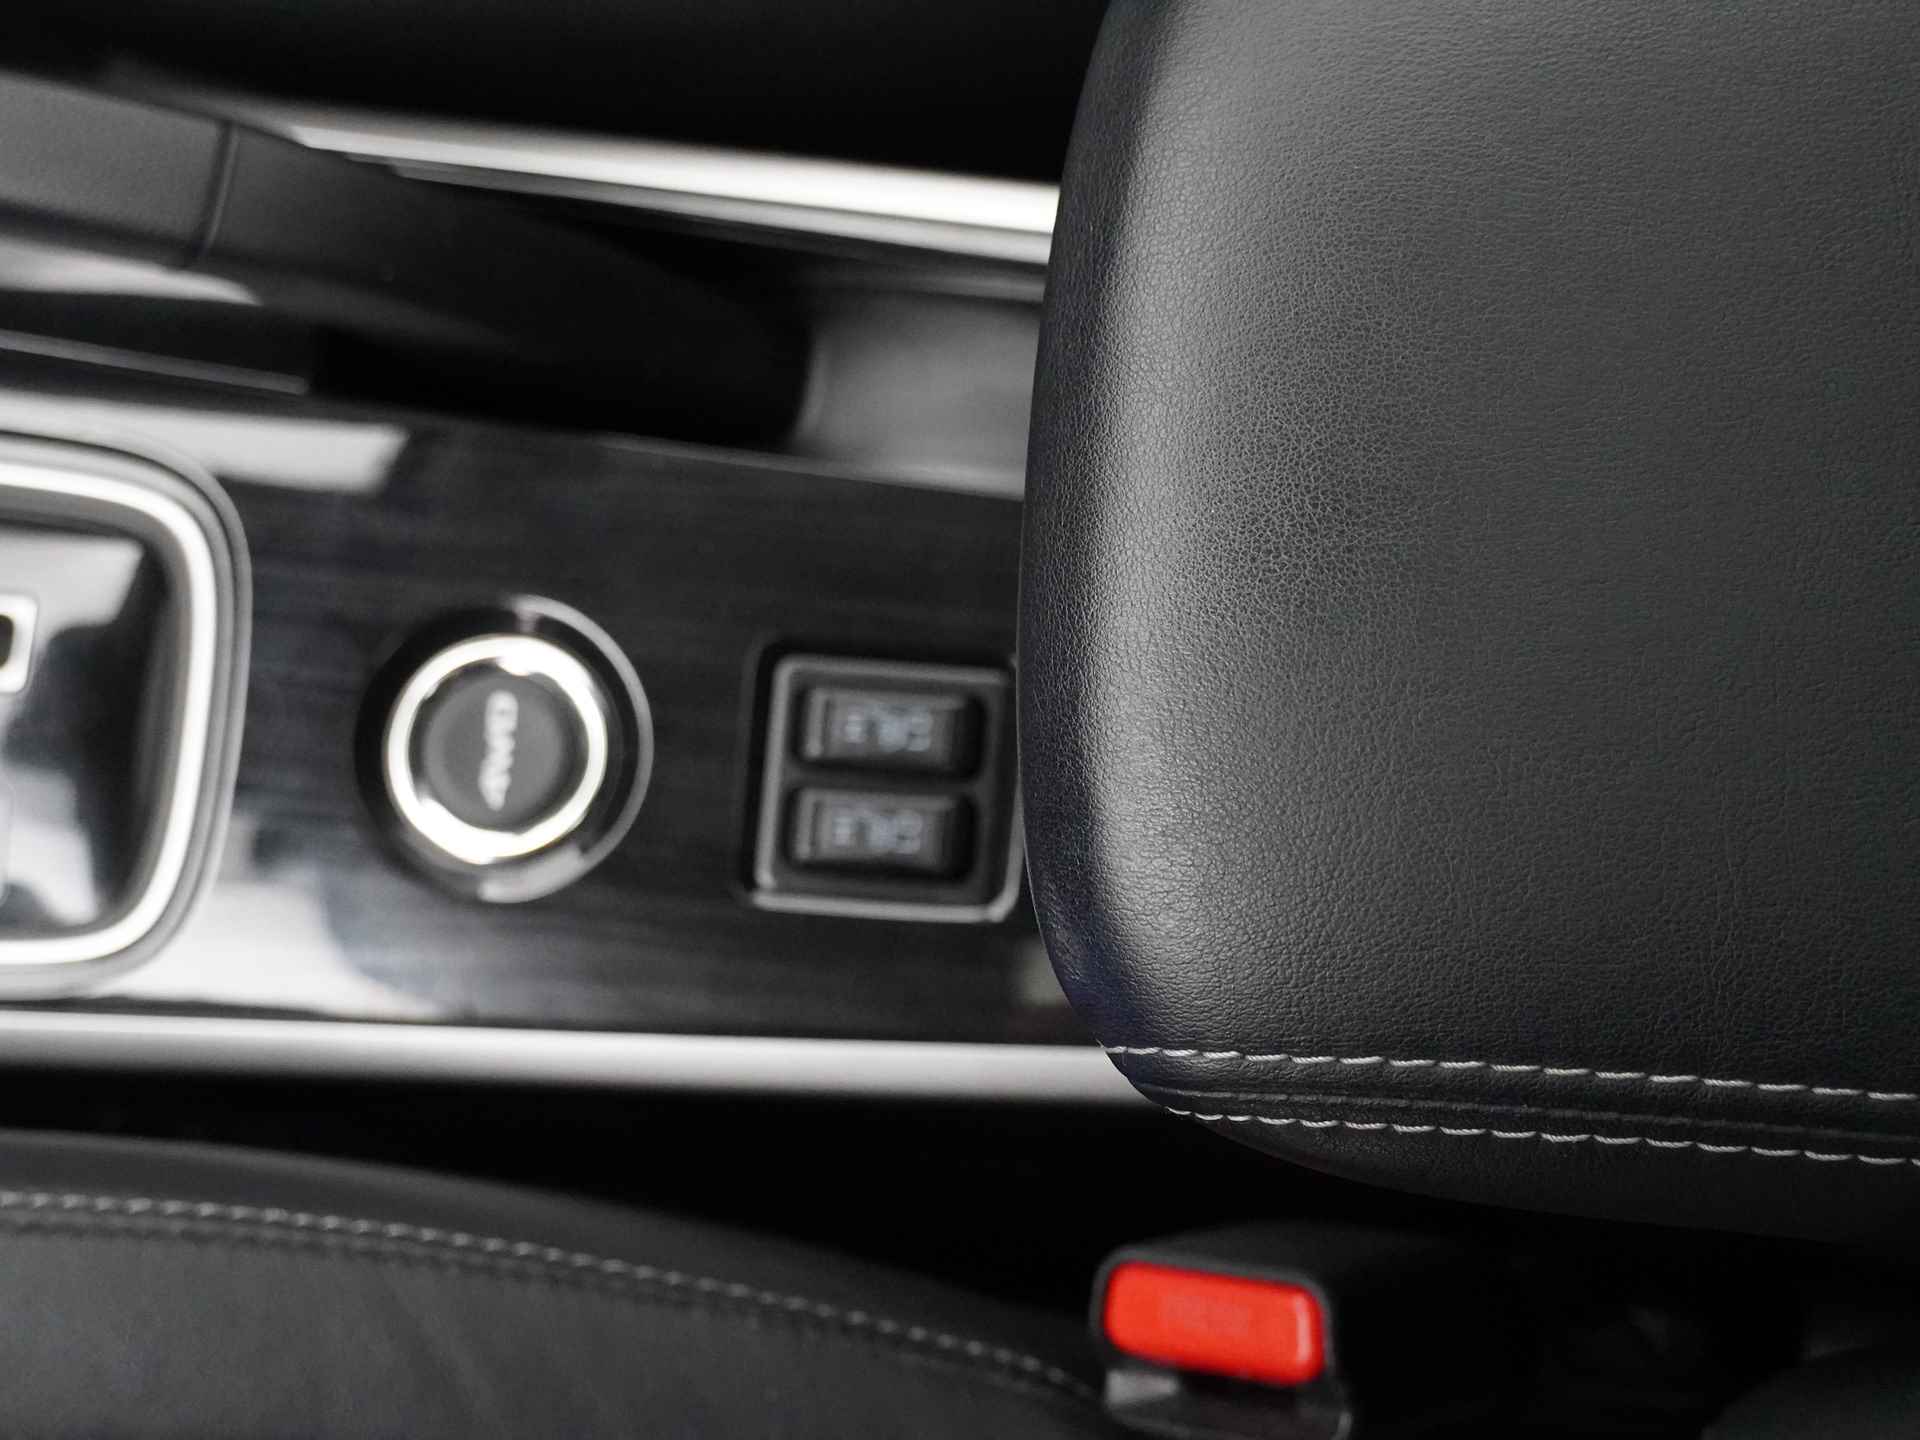 Mitsubishi Outlander 2.0 Instyle+ 4WD - Schuifkanteldak - Lederen bekleding - Voorraam verwarming - Apple CarPlay / Android Auto - Elektrische achterklep - 12 Maanden bovag garantie - 34/48